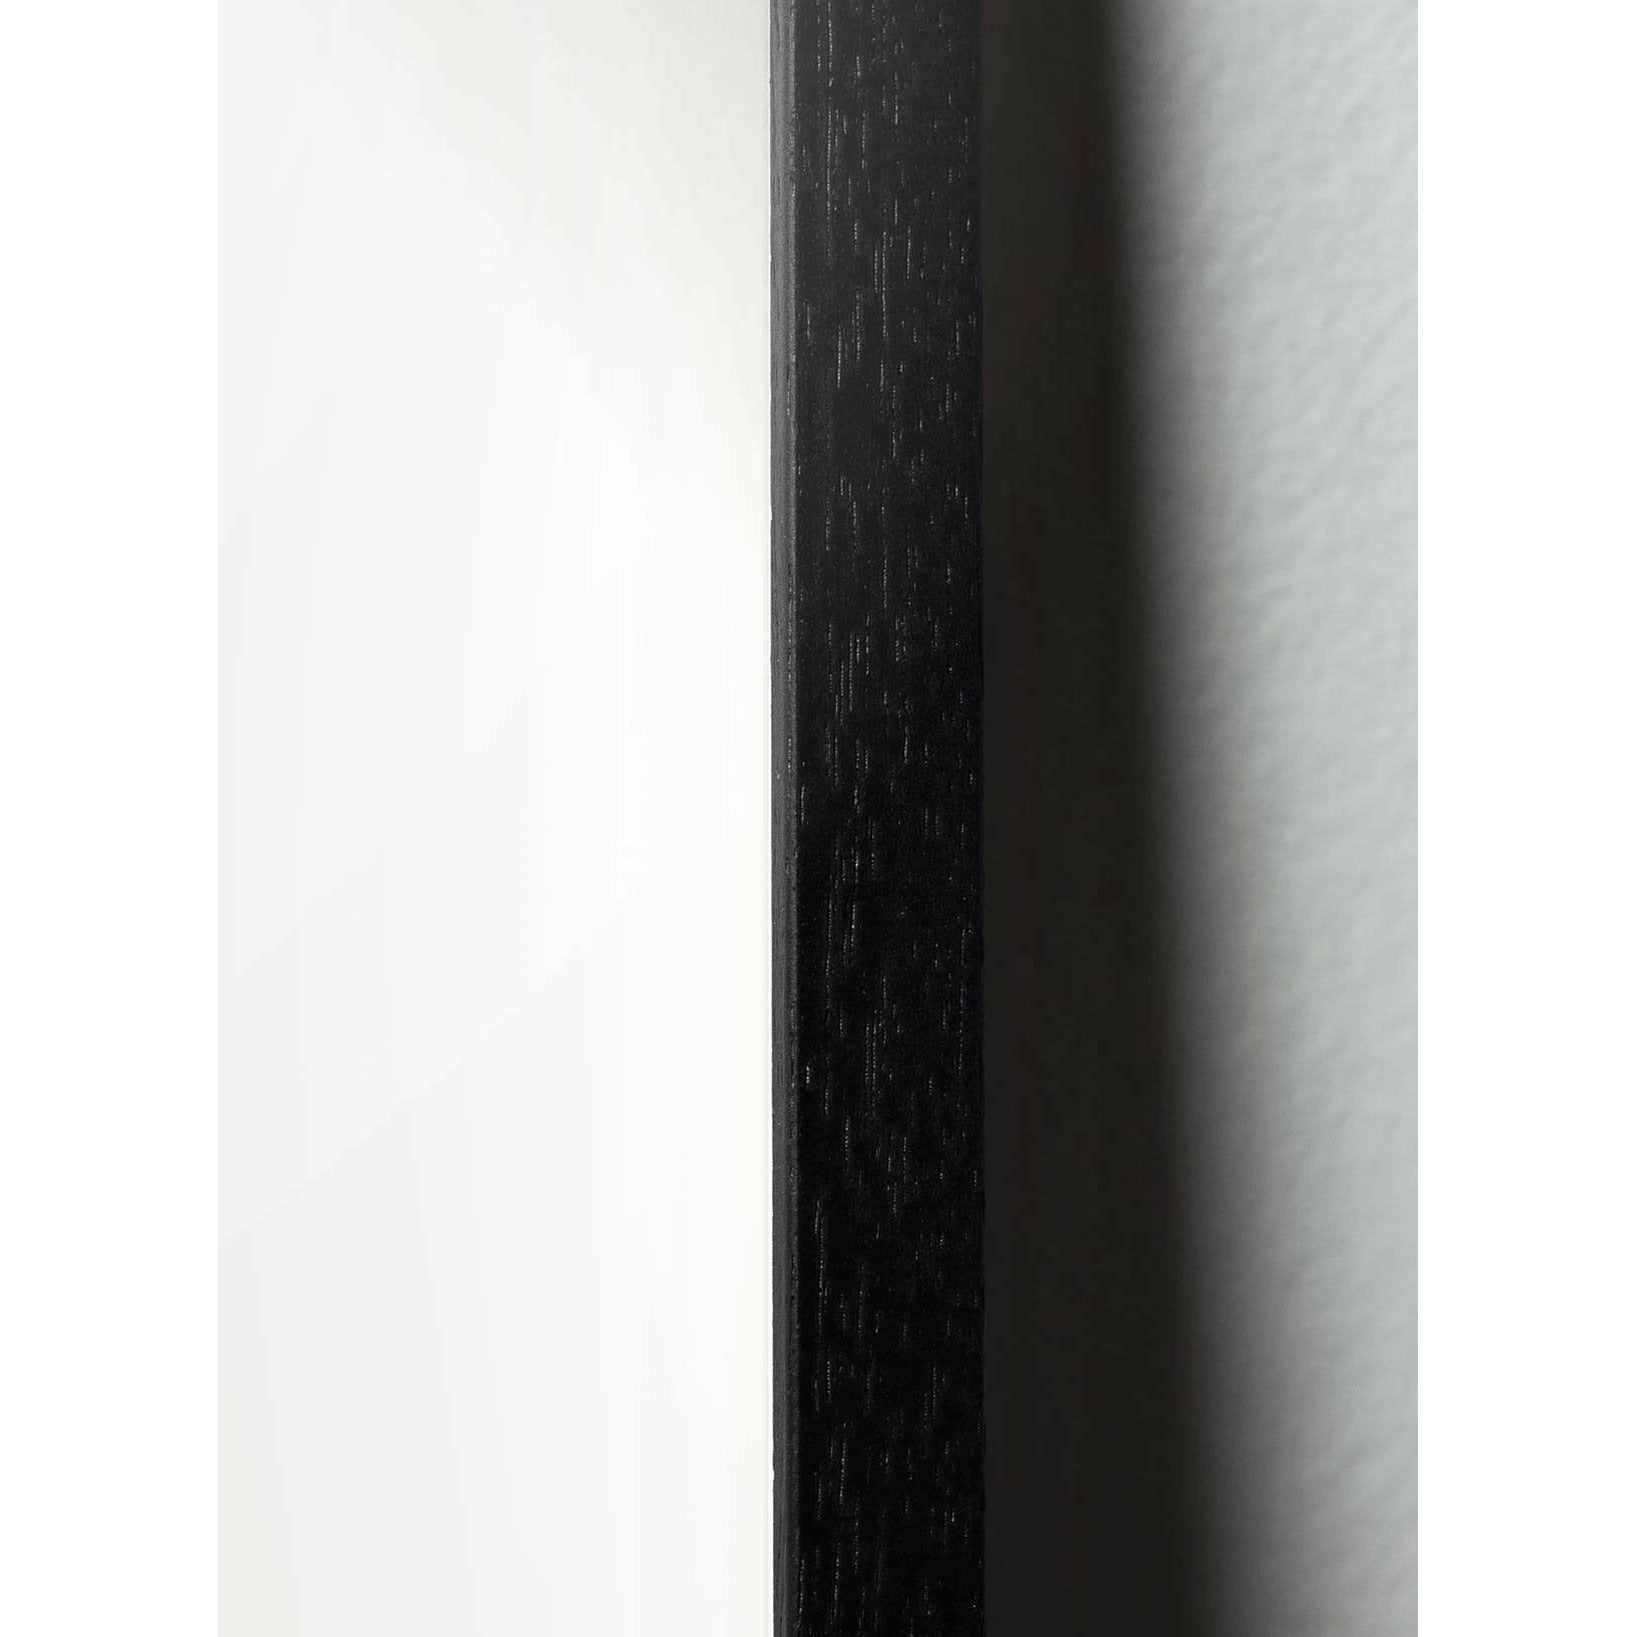 Poster di linea formica da un'antchild, cornice in legno laccato nero 30x40 cm, sfondo bianco